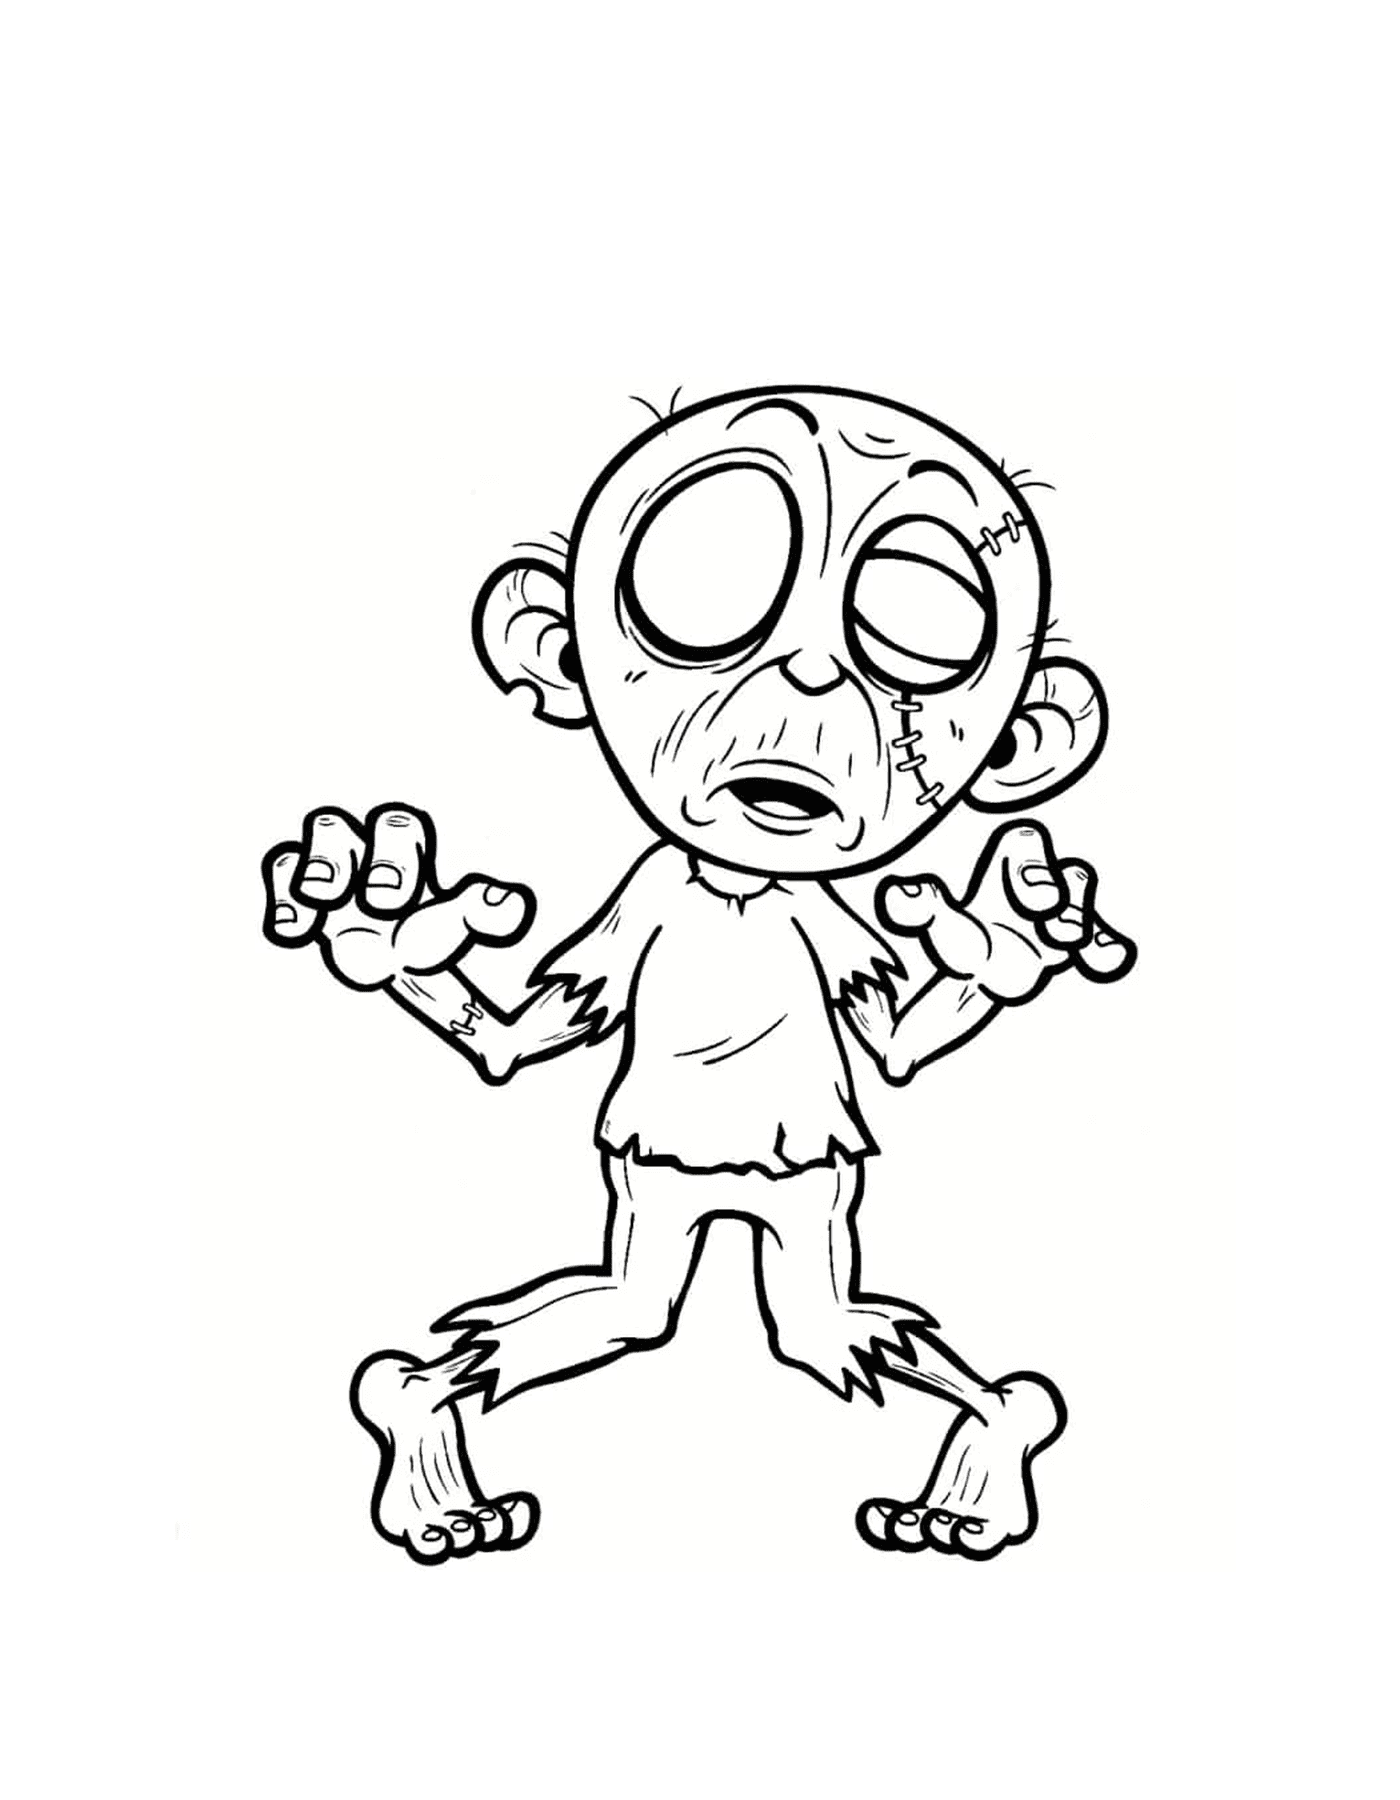   Un dessin animé d'un zombie maléfique 